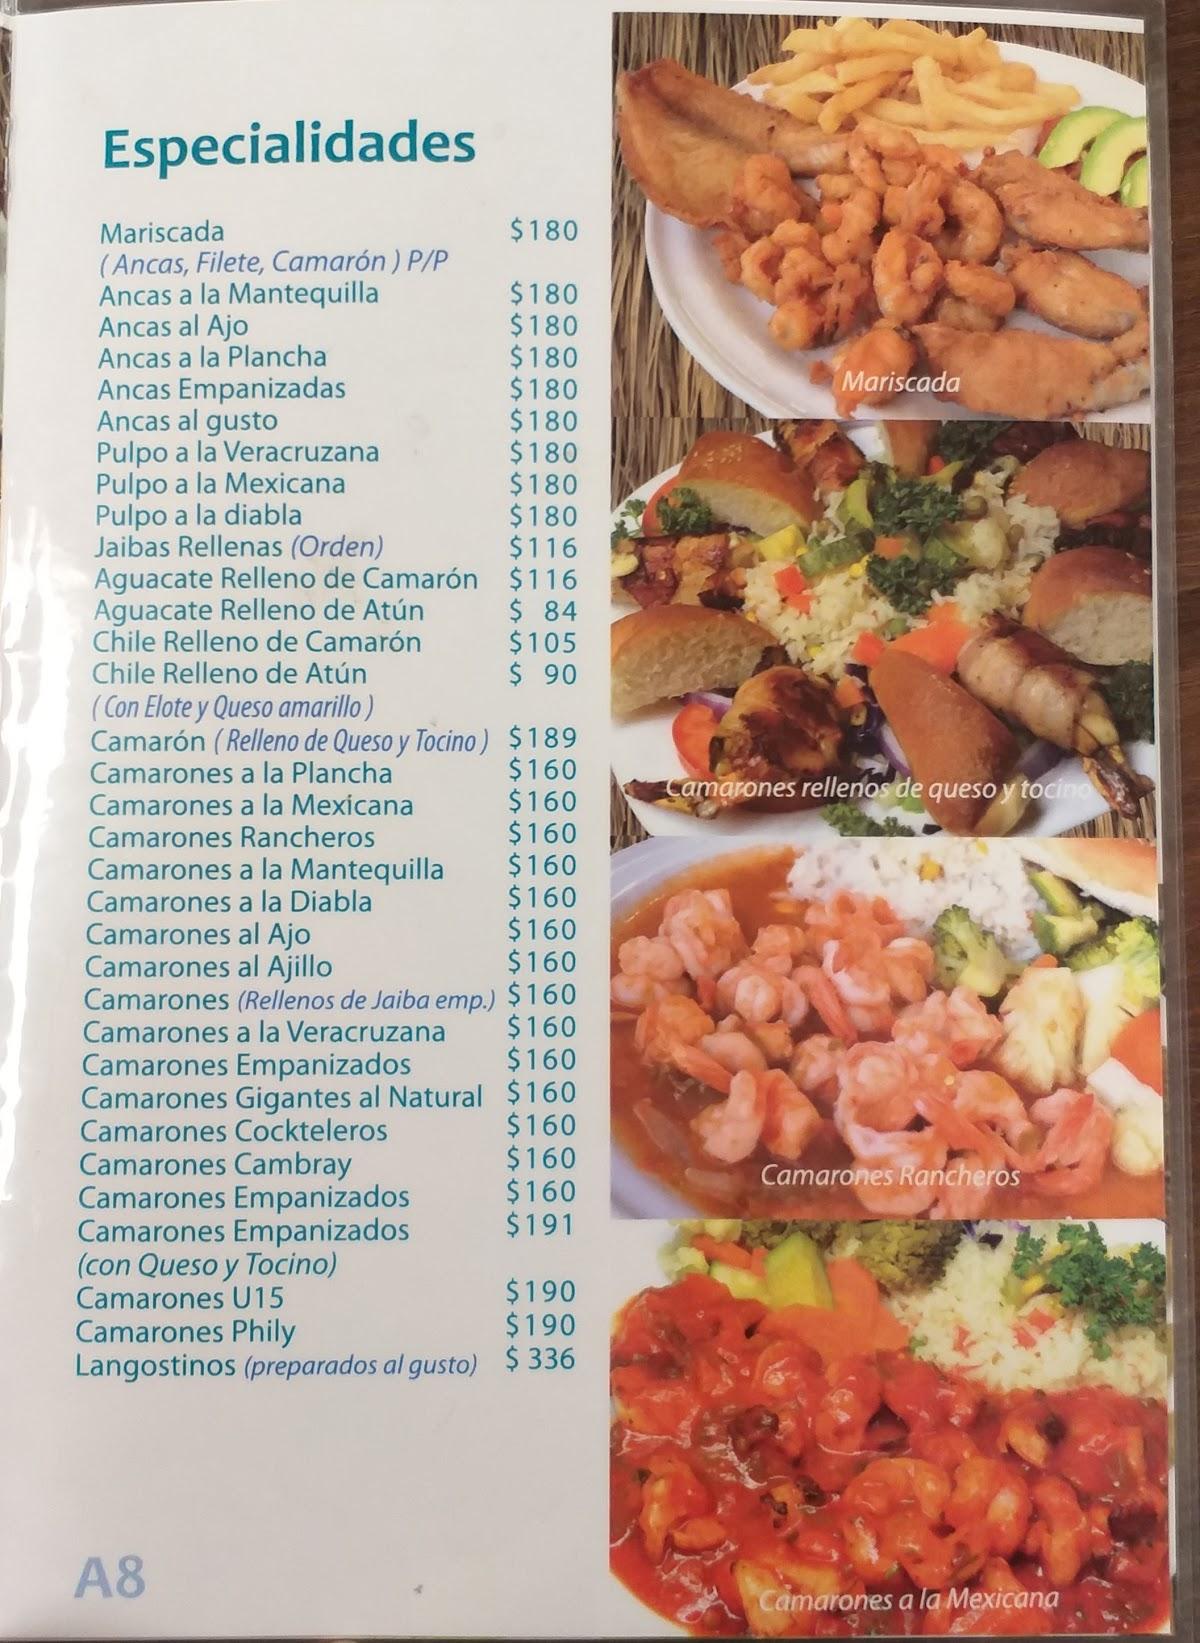 Menu at Mariscos La Anacua restaurant, San Nicolás de los Garza